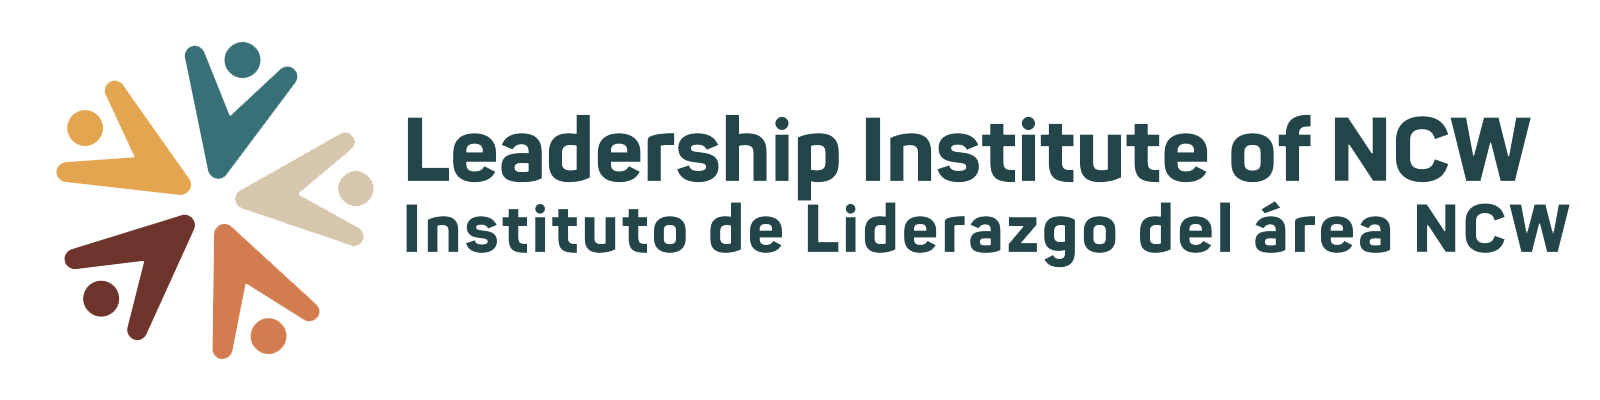 HORZ Leadership Institute NCW Logo